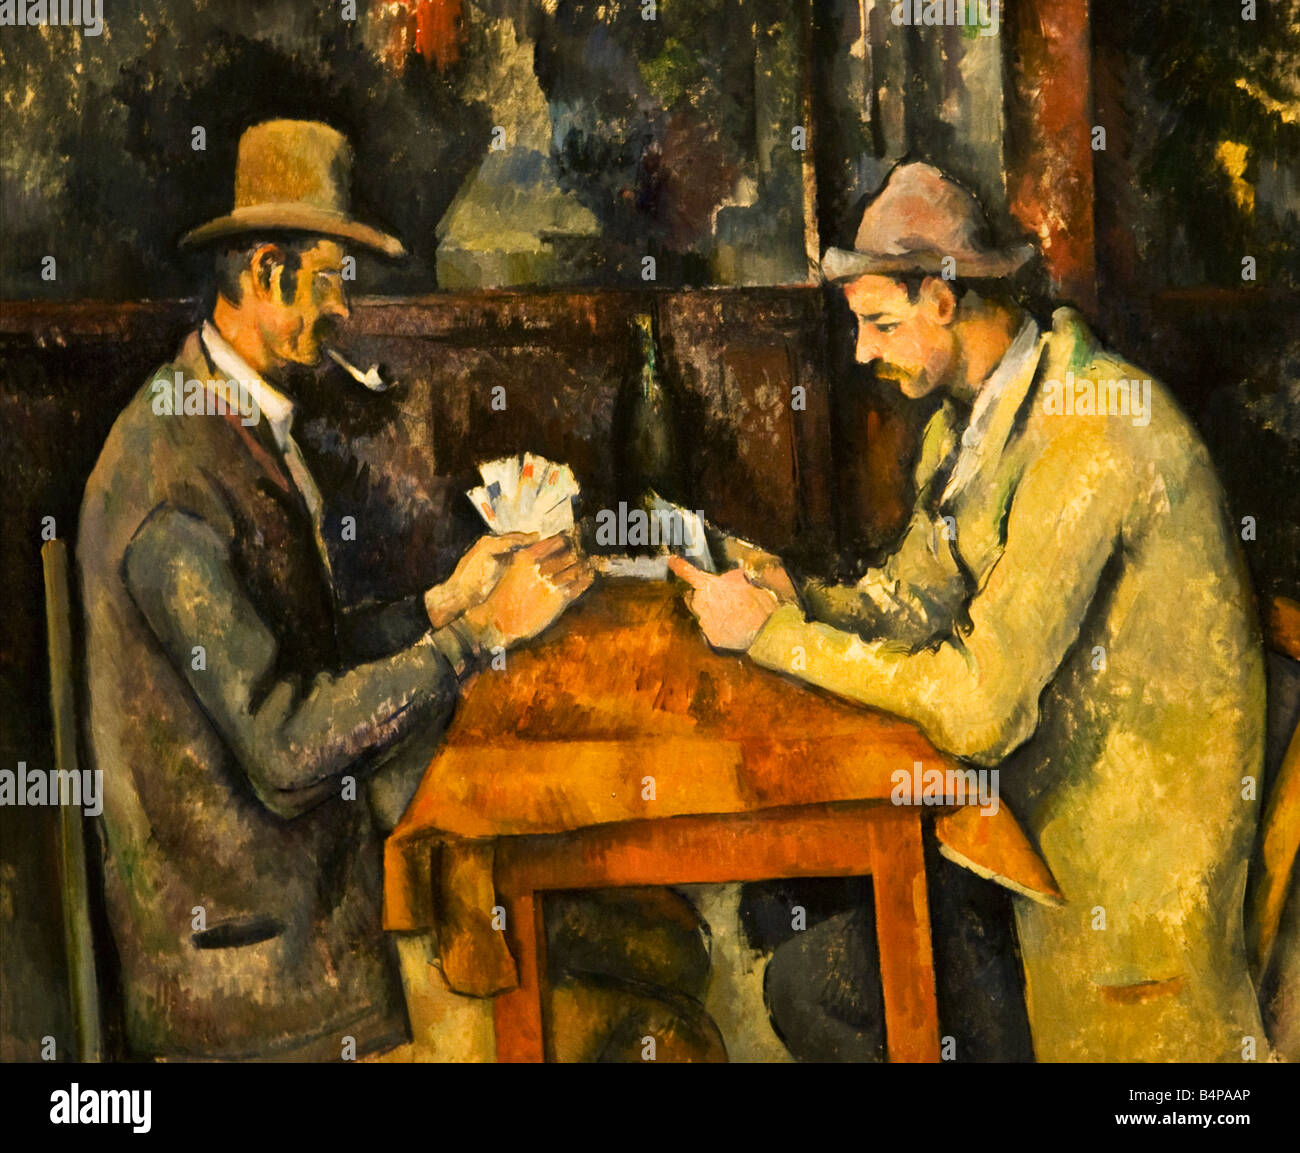 Joueurs de cartes peint par Paul Cézanne 1890-1895 Courtauld Gallery Somerset House, Londres, Angleterre Banque D'Images